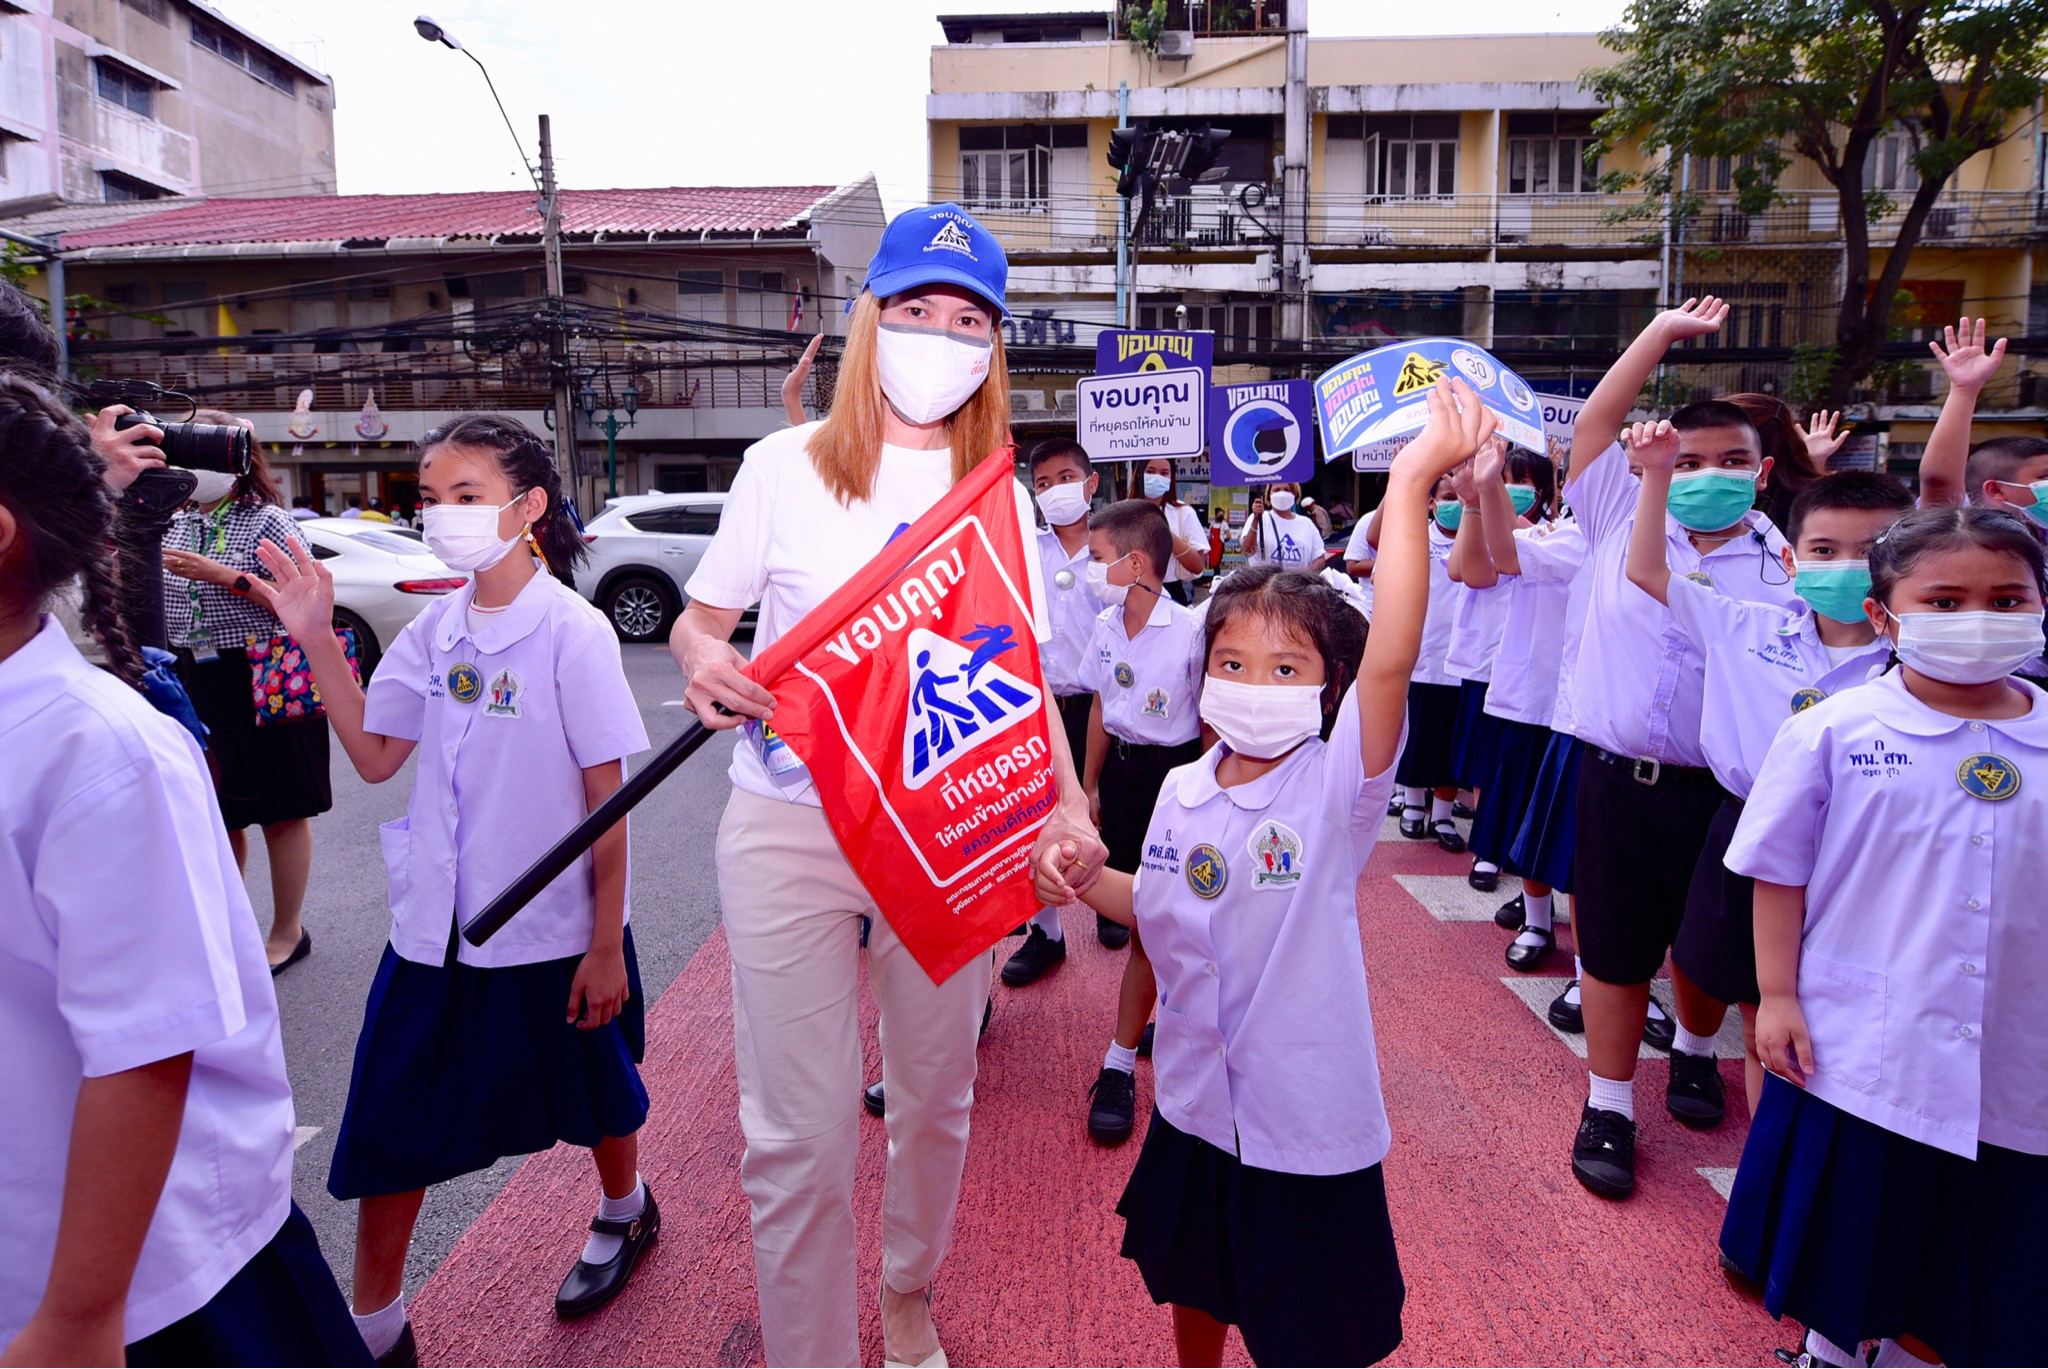 ชูนโยบาย Smart City เมืองปลอดภัย คนปลอดภัย ลดความเร็วเขตชุมชน ปลุกจิตสำนึกสังคม thaihealth